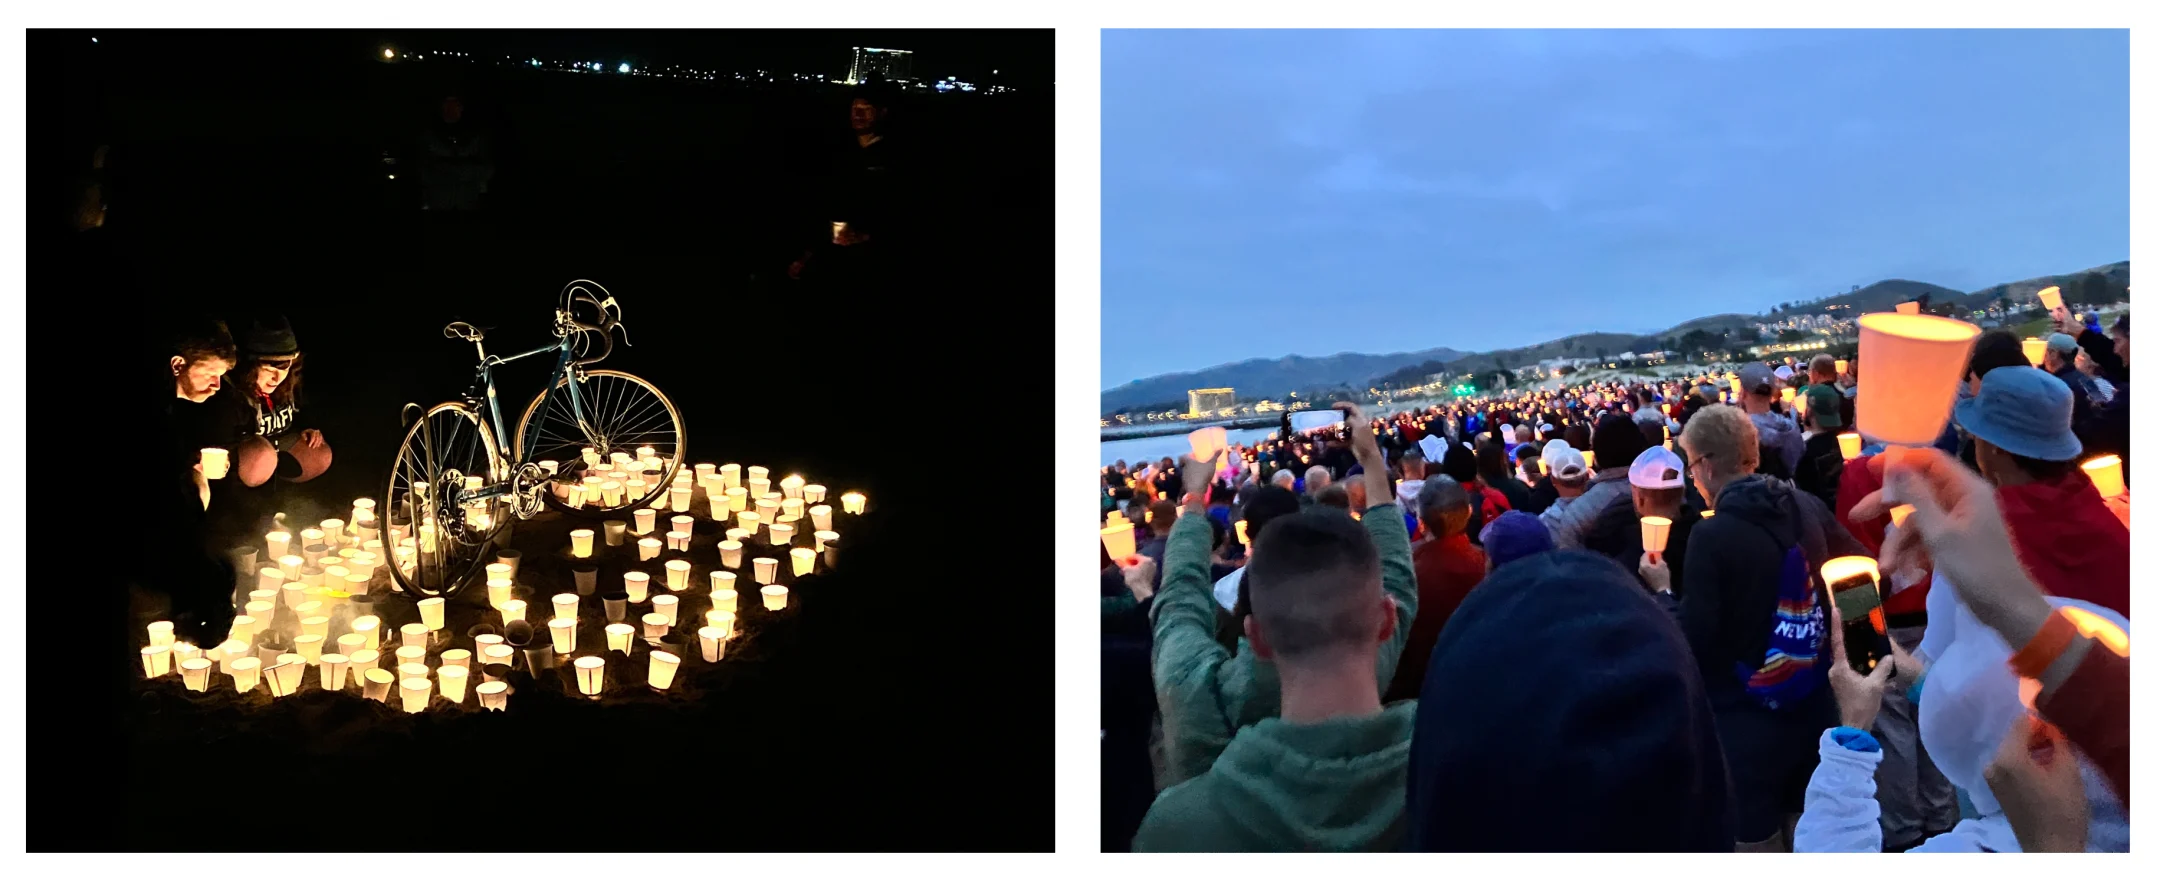 Bike surrounded by candlelit vigil